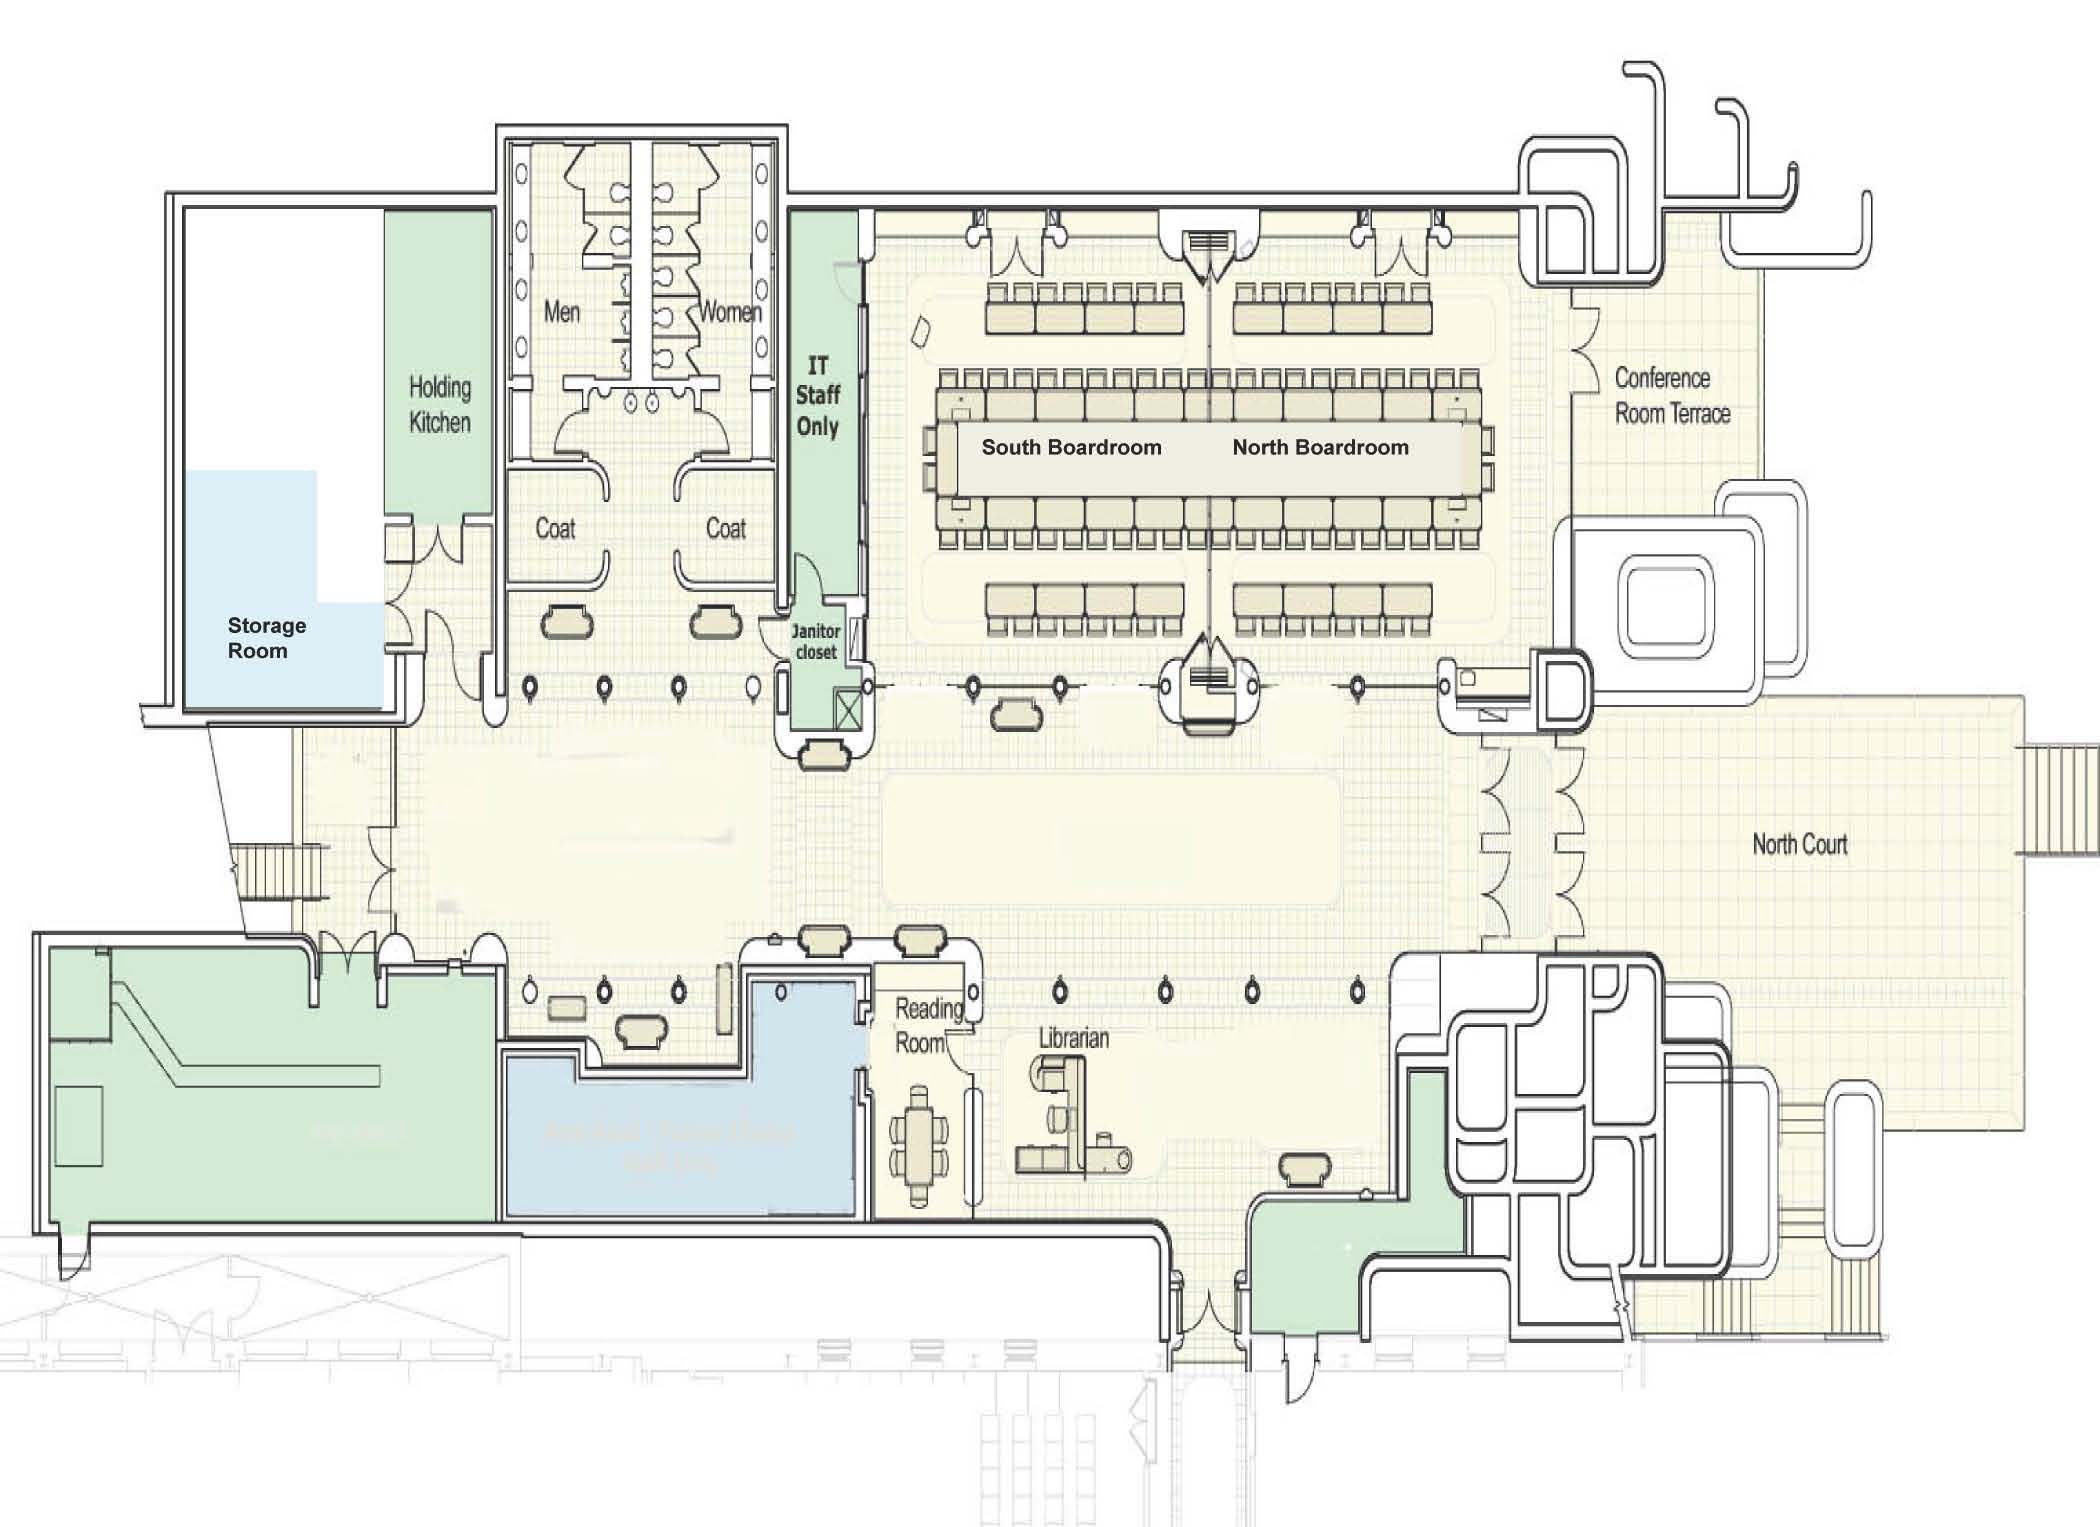 Posner Center floorplan